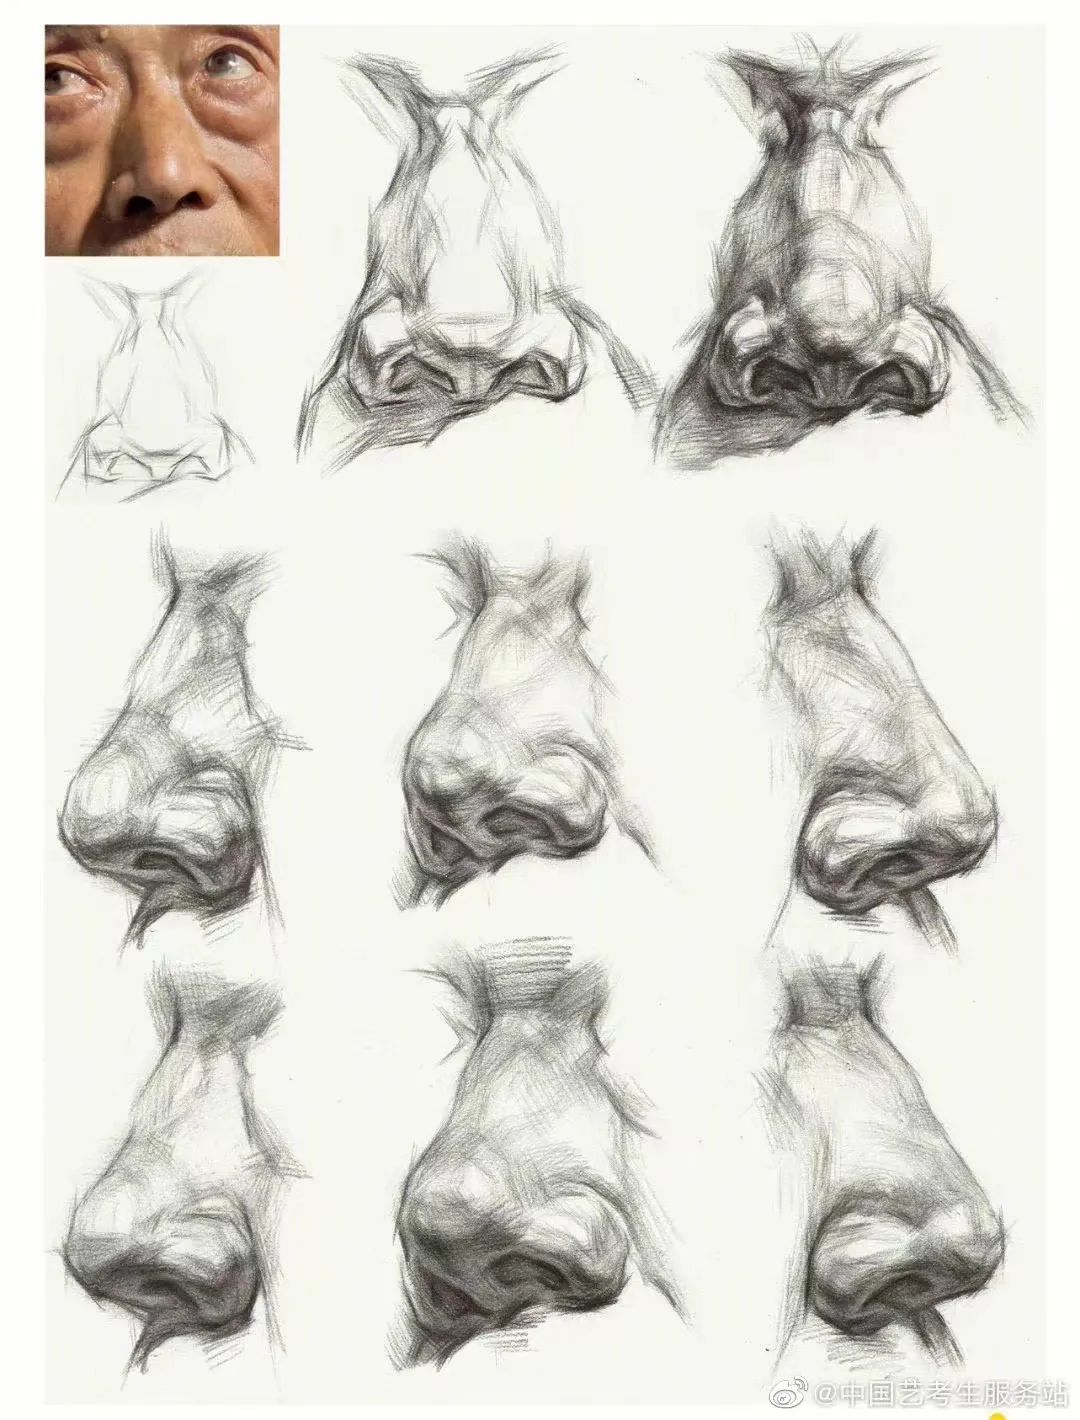 人脸素描画法6步骤图片